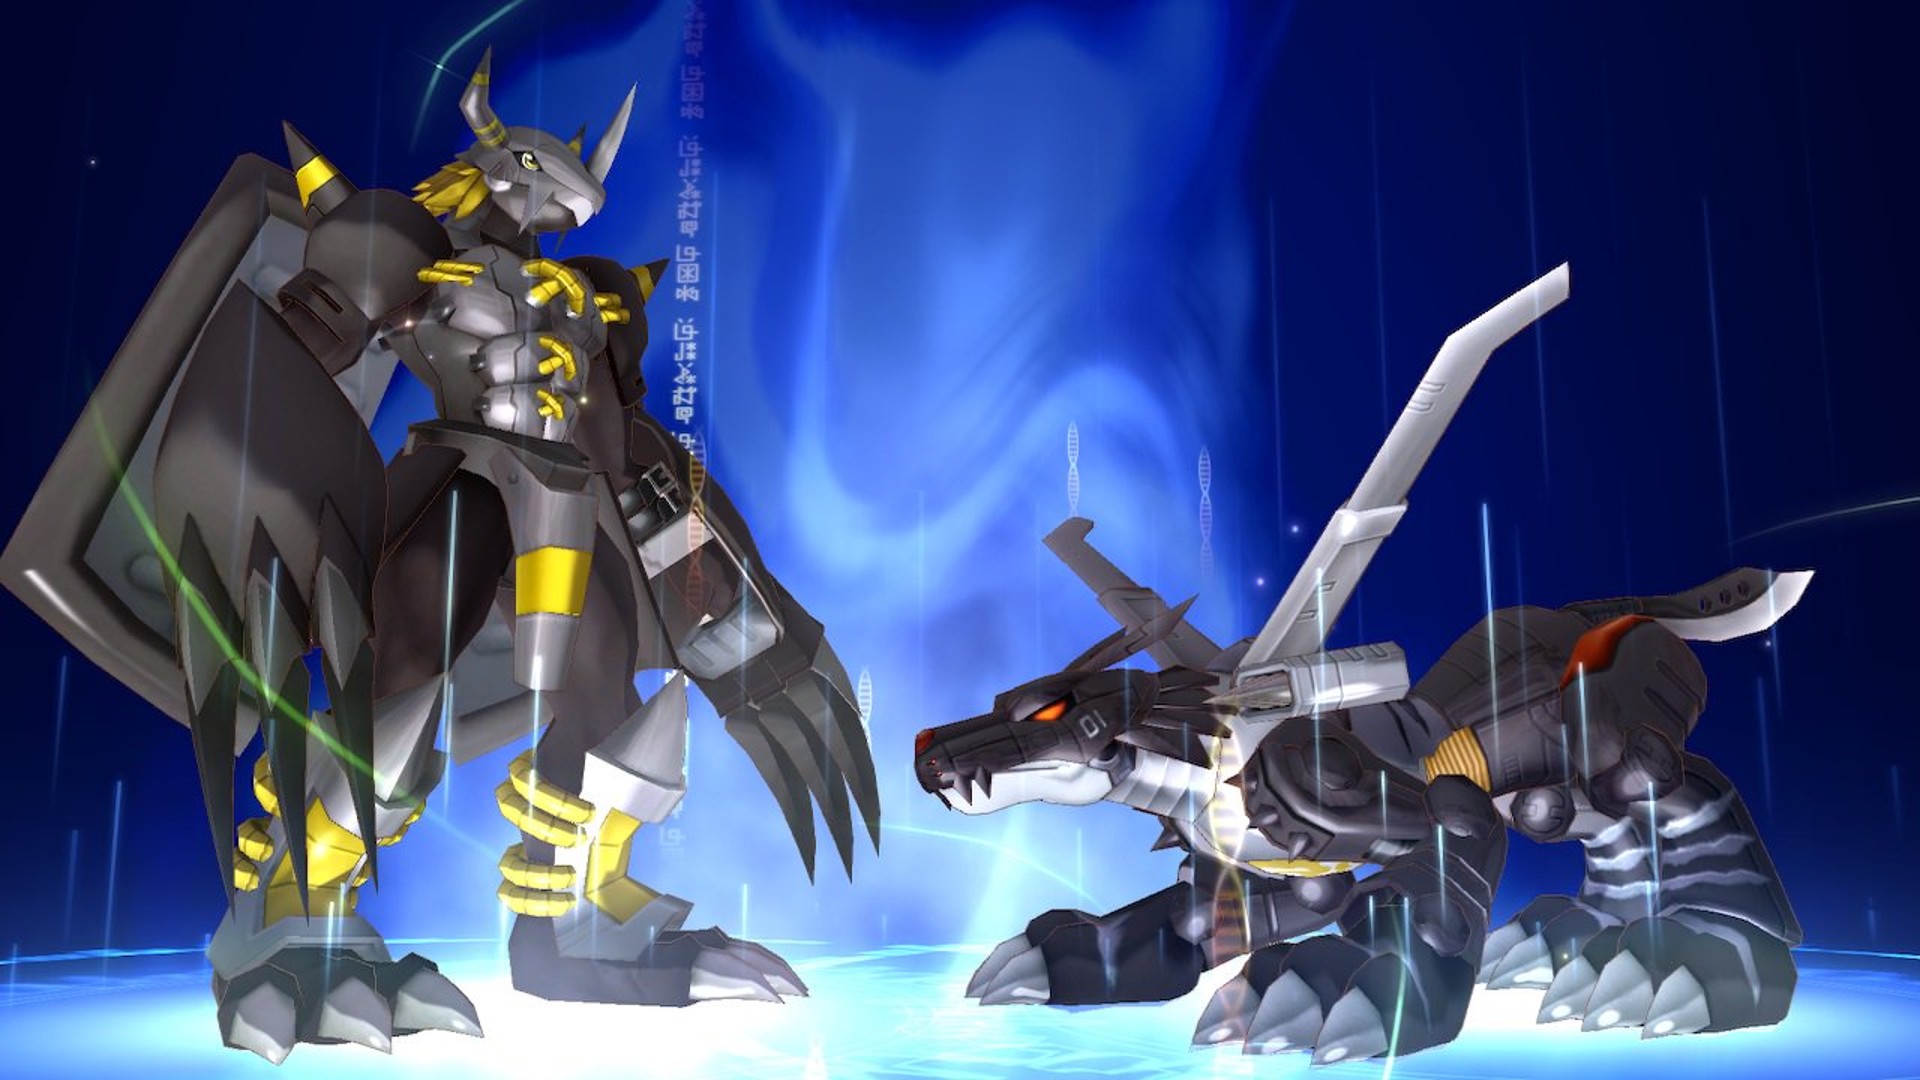 โปรดิวเซอร์ประกาศ “ตอนนี้กำลังพัฒนาเกมใหม่จาก Digimon หลายเกมด้วยกัน”